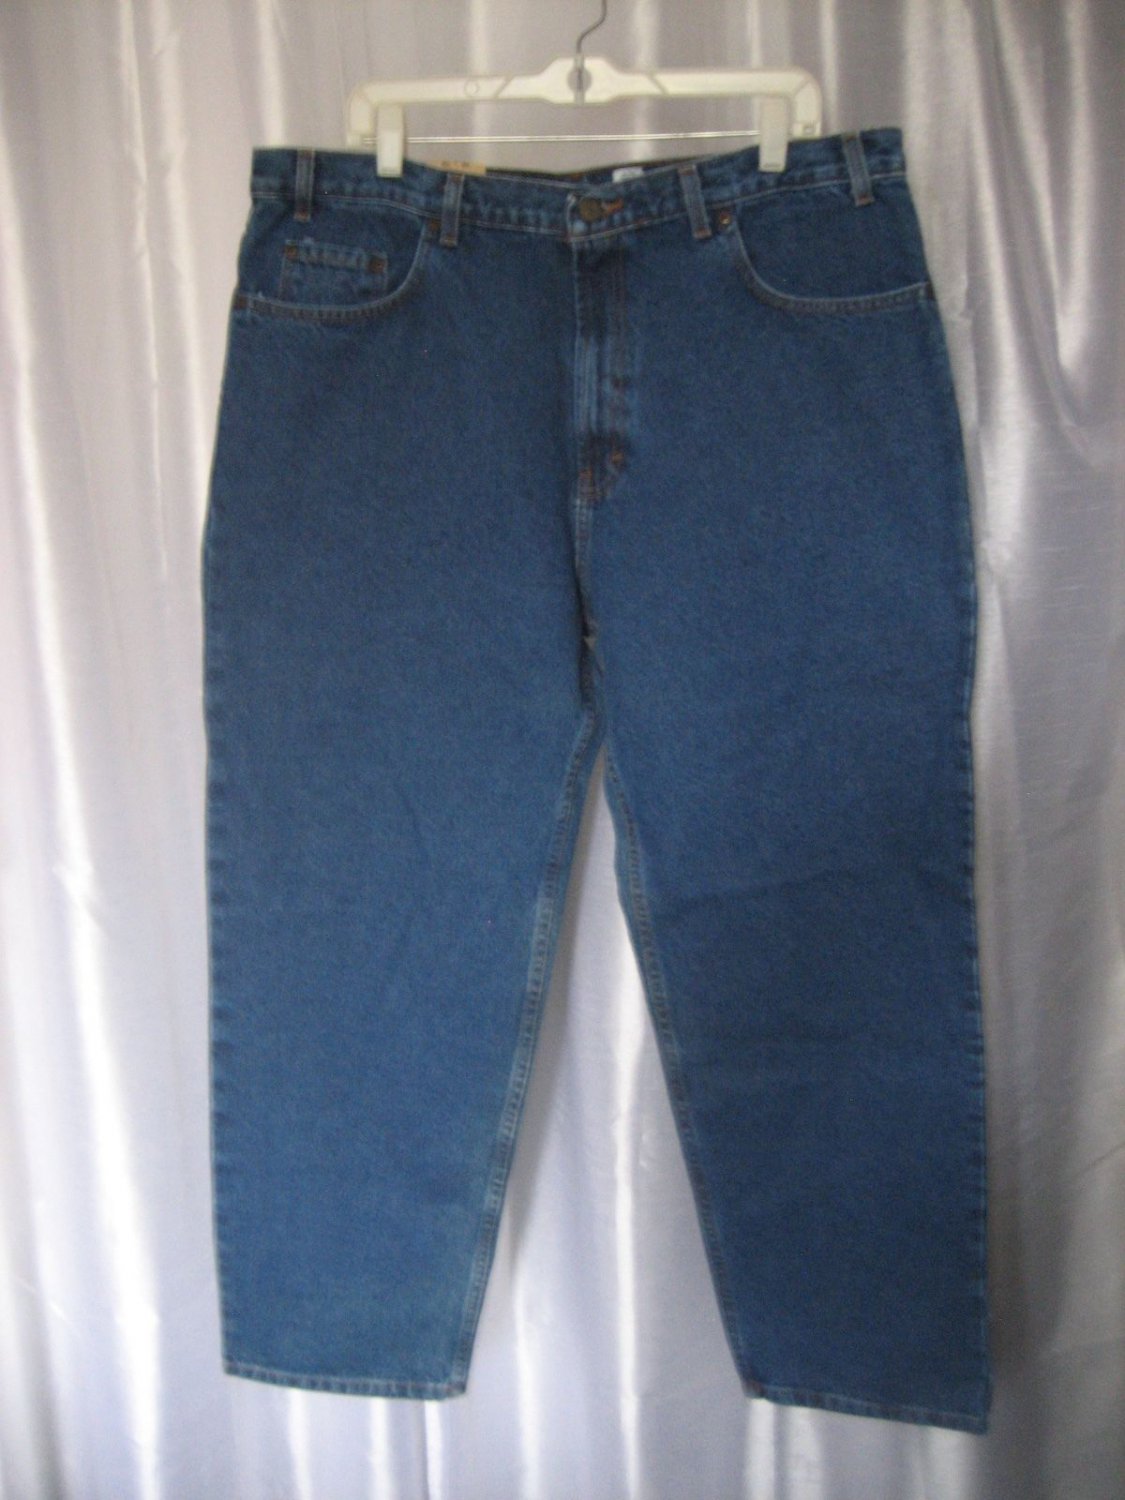 Kirkland Signature Relaxed Fit Men's Denim Jeans Long Pants Sz 40Waist ...